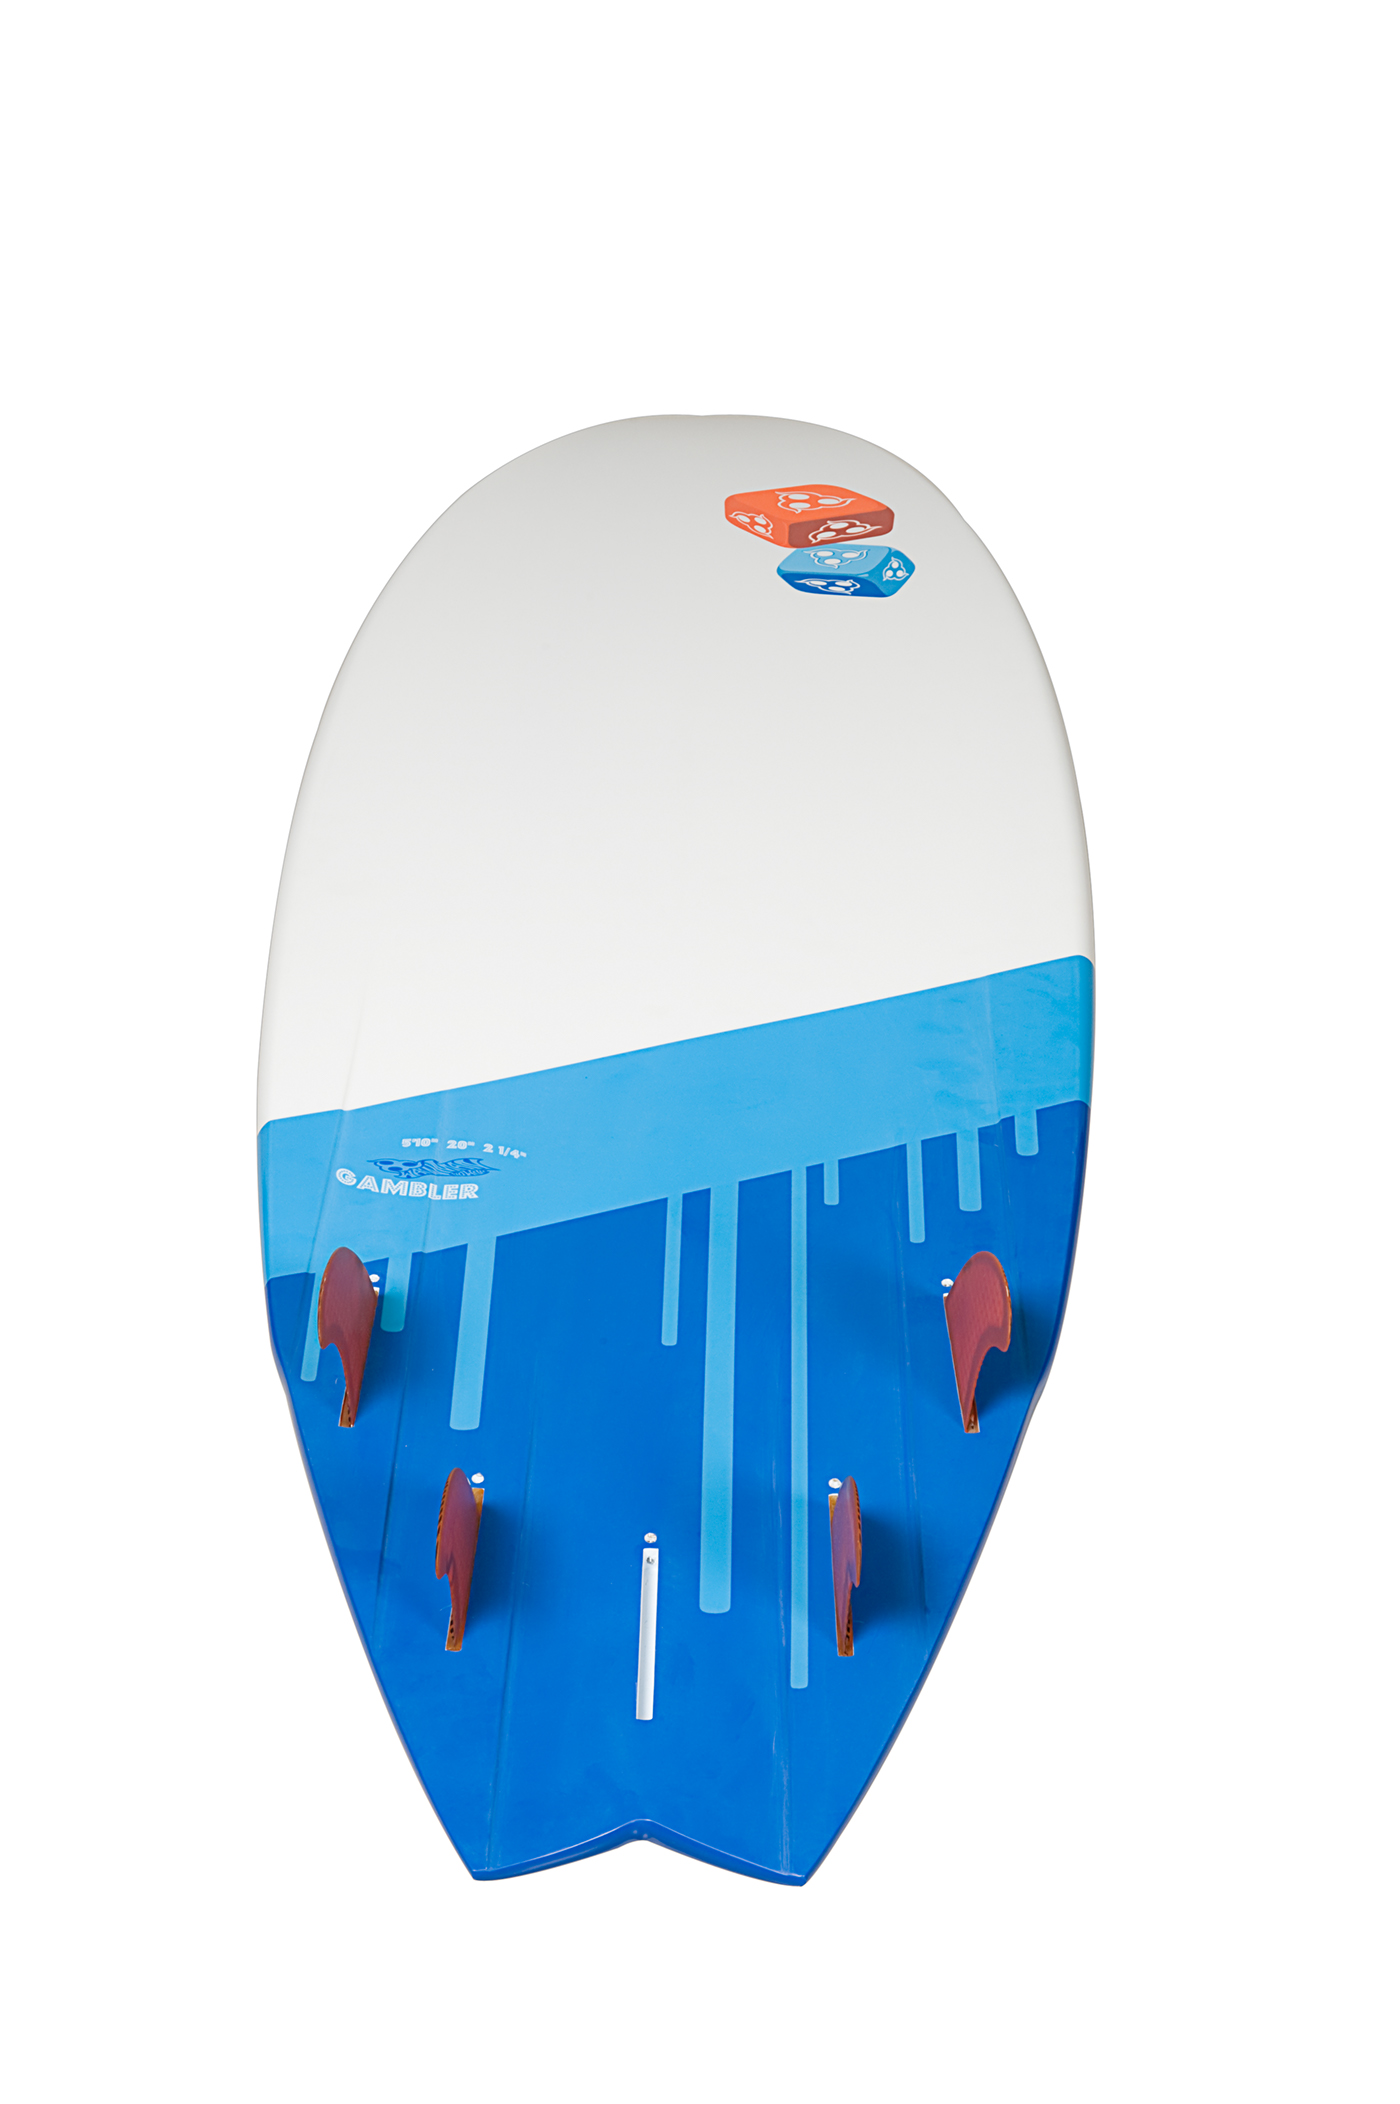 wainman hawaii kiteboarding Kite Board surfboard graphics design gambler yoda yoodaaa marcin kupczak magnum Passport